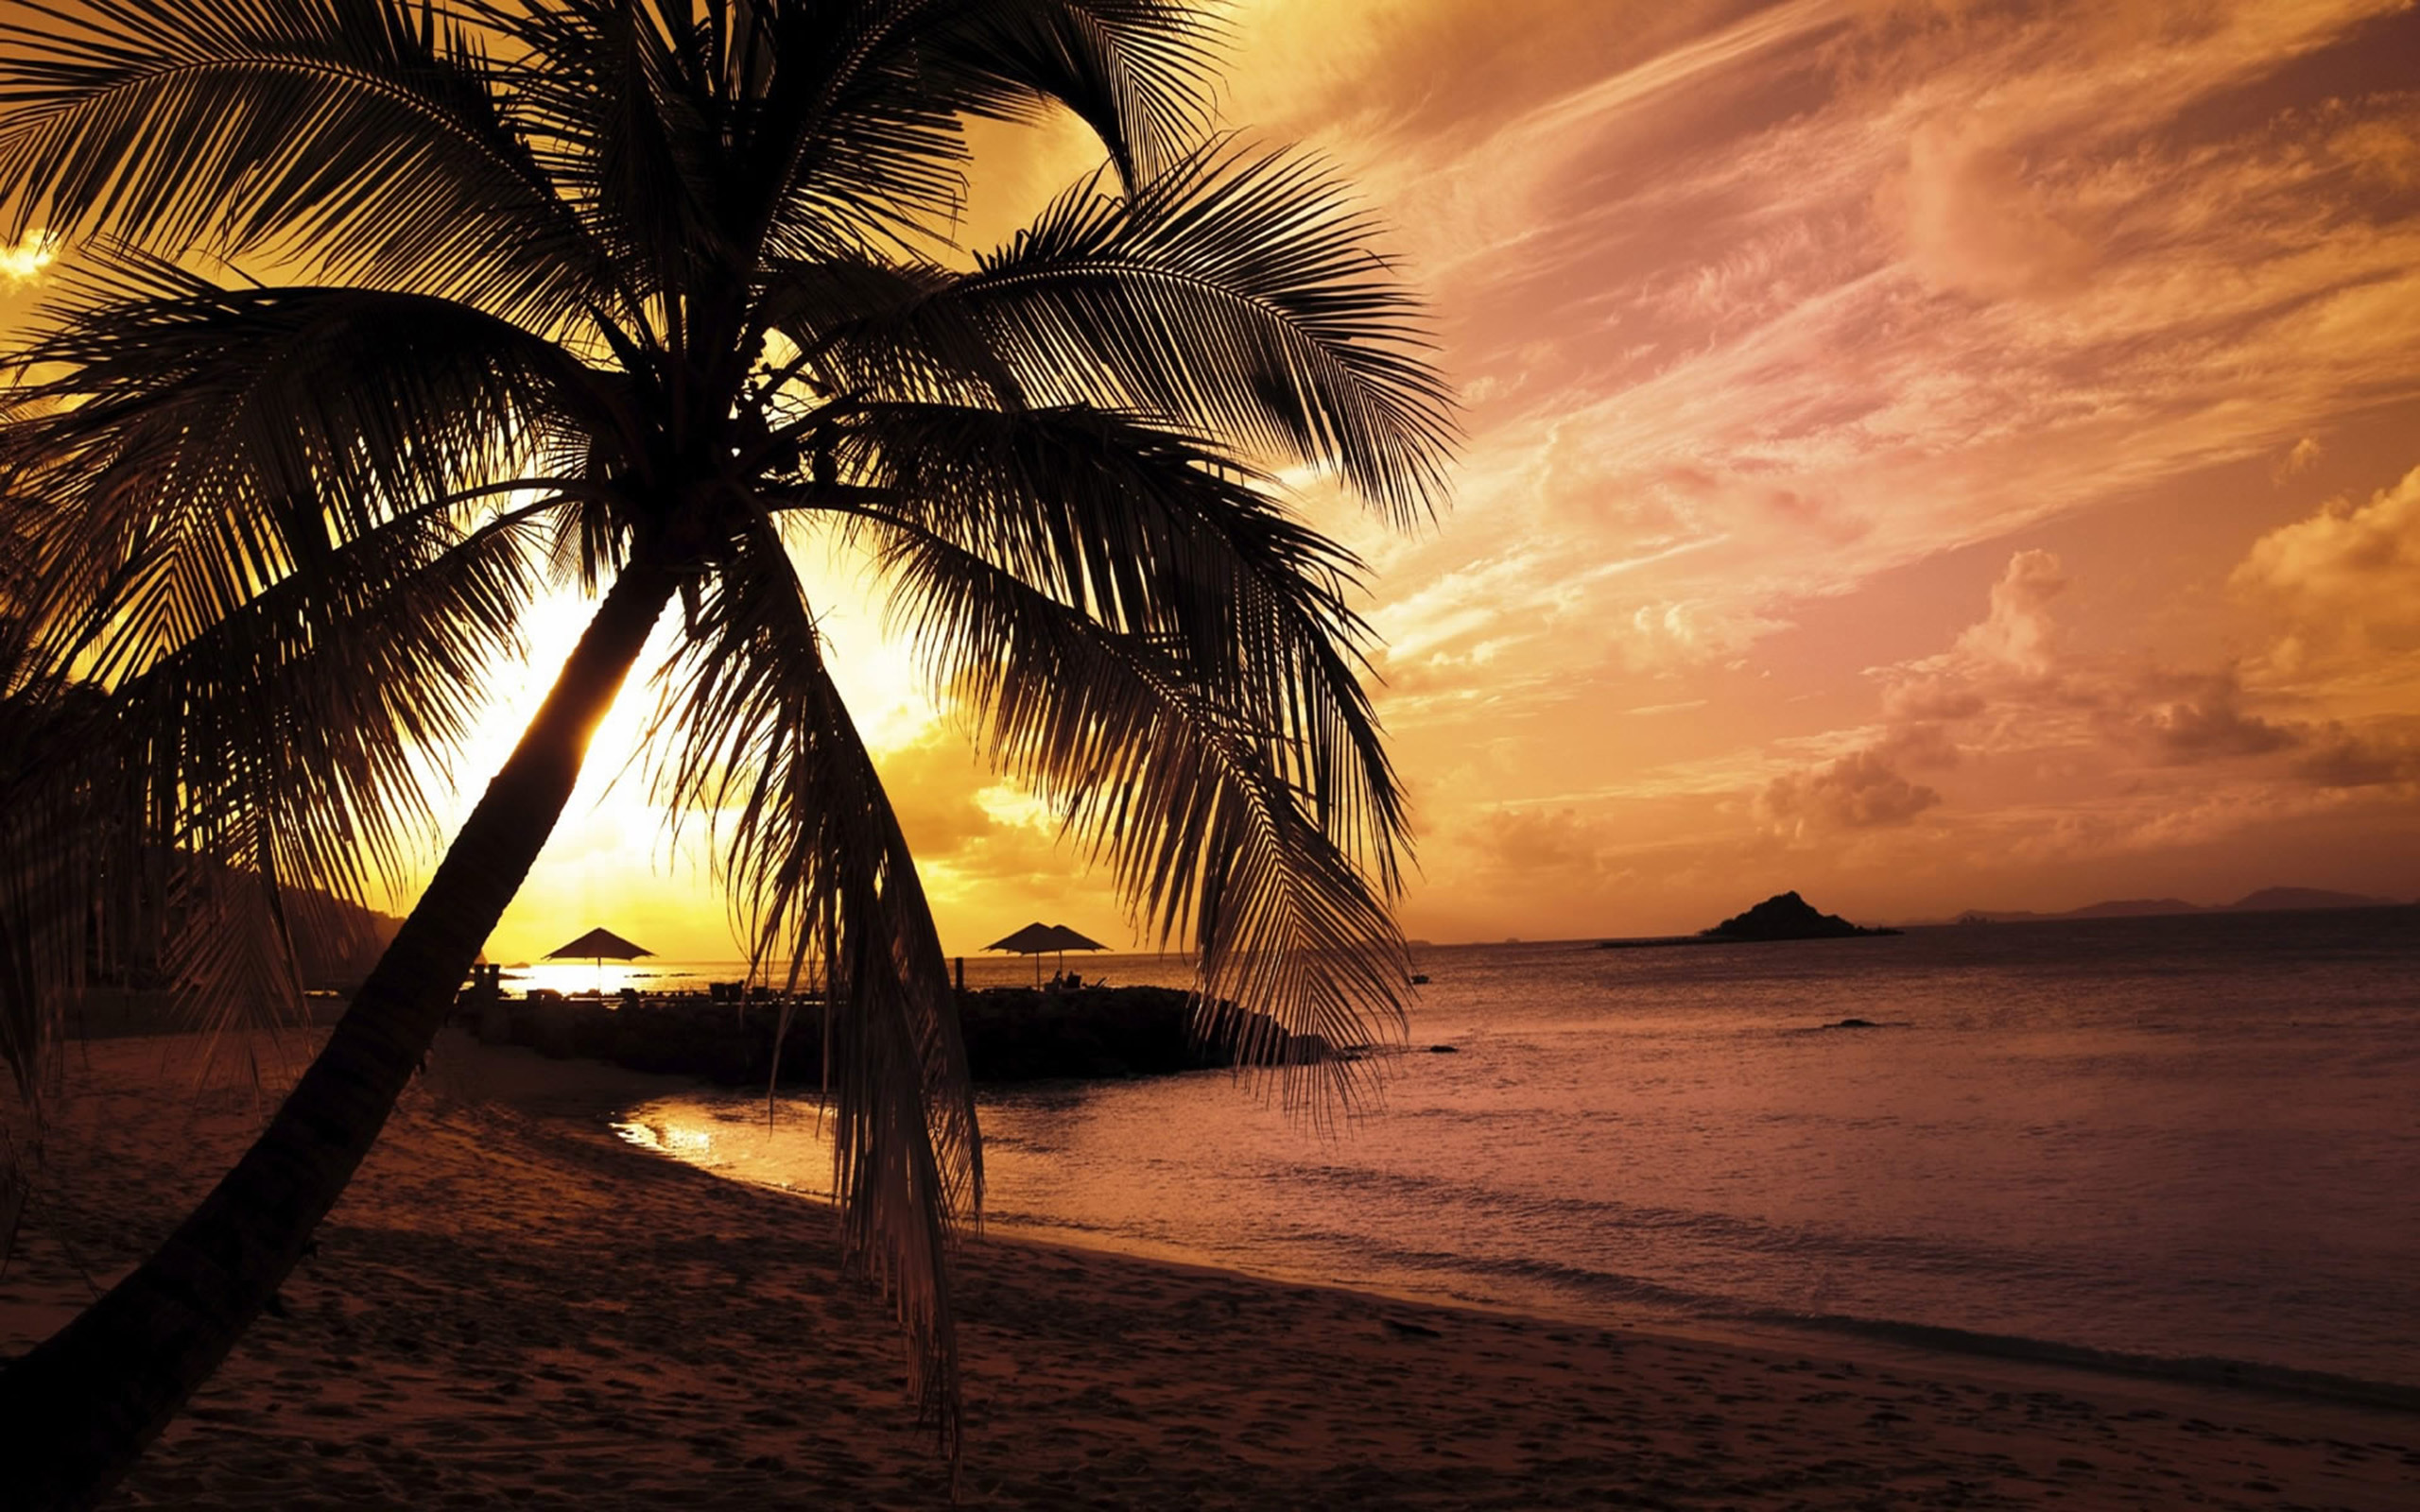 Beach palm tree in sunset Beach palm tree in sunset